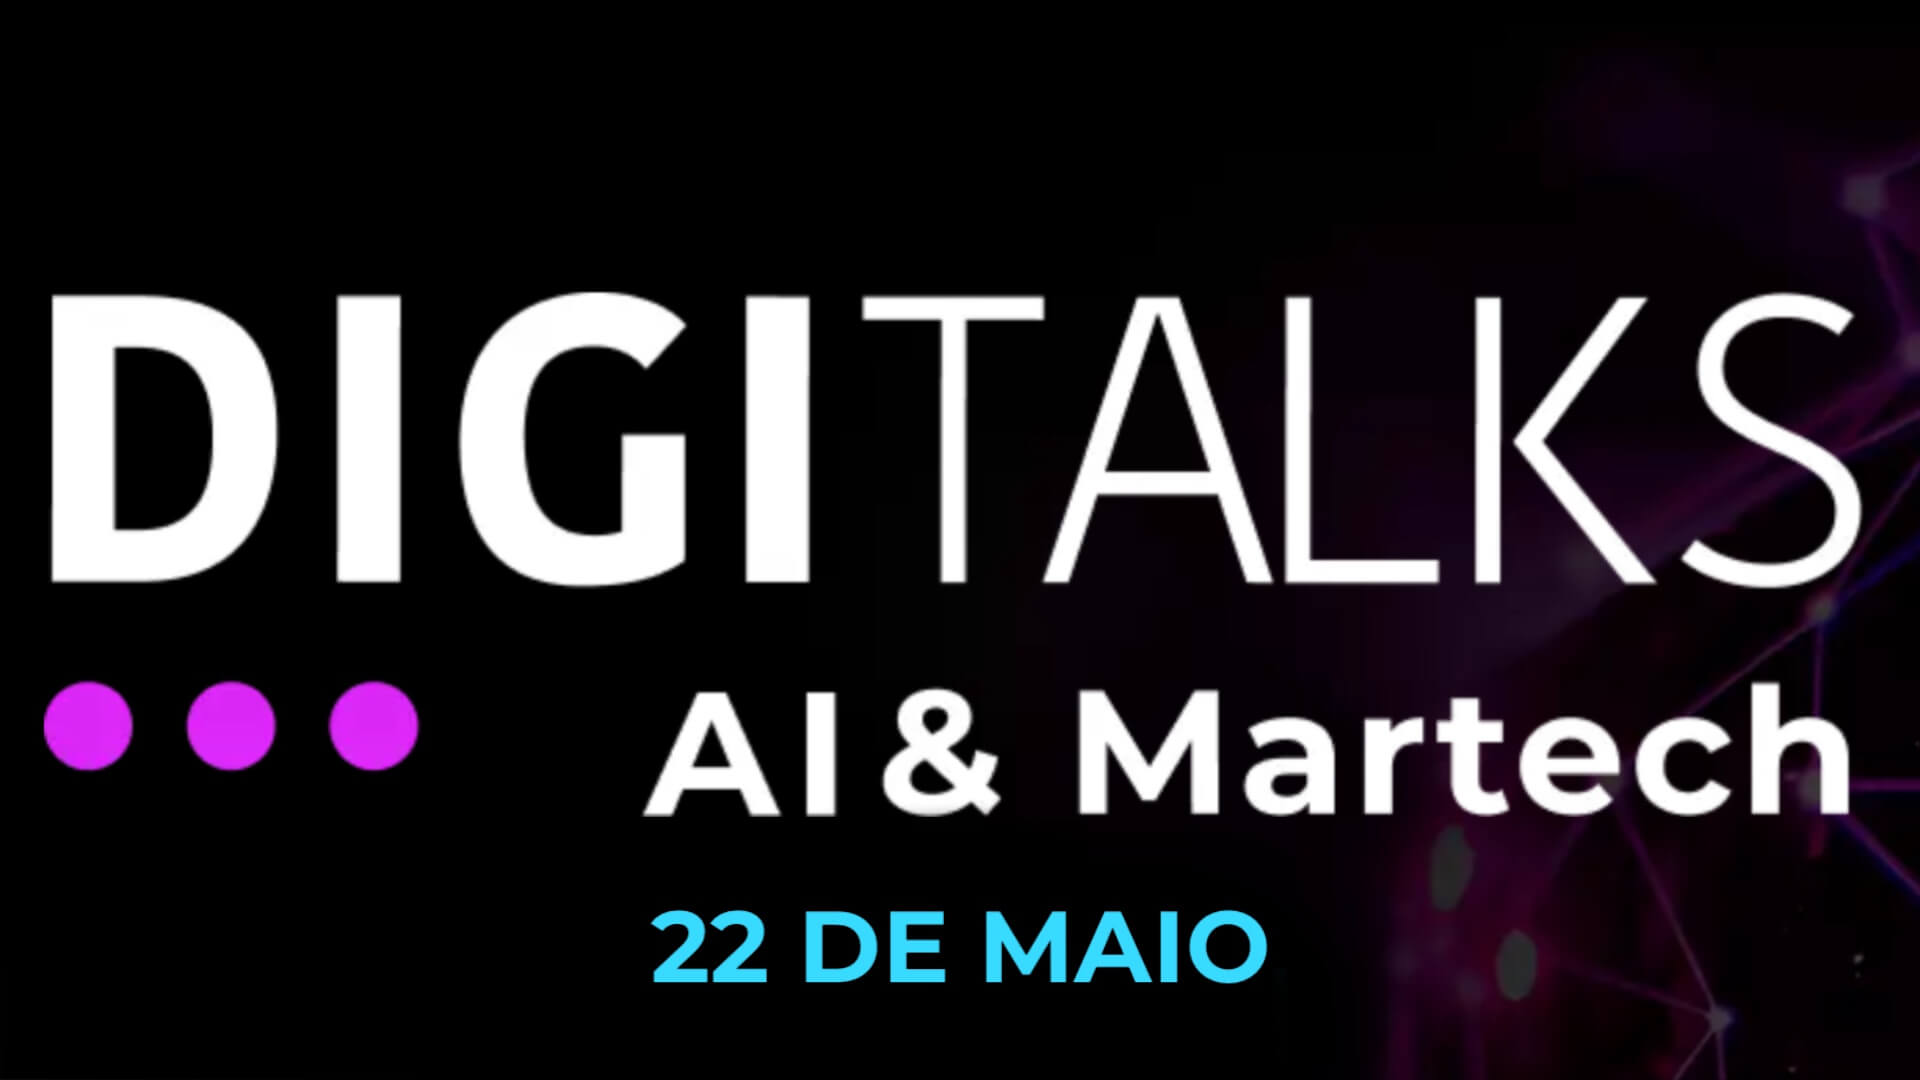 Digitalks AI & Martech reúne gigantes da tecnologia no Cubo Itaú